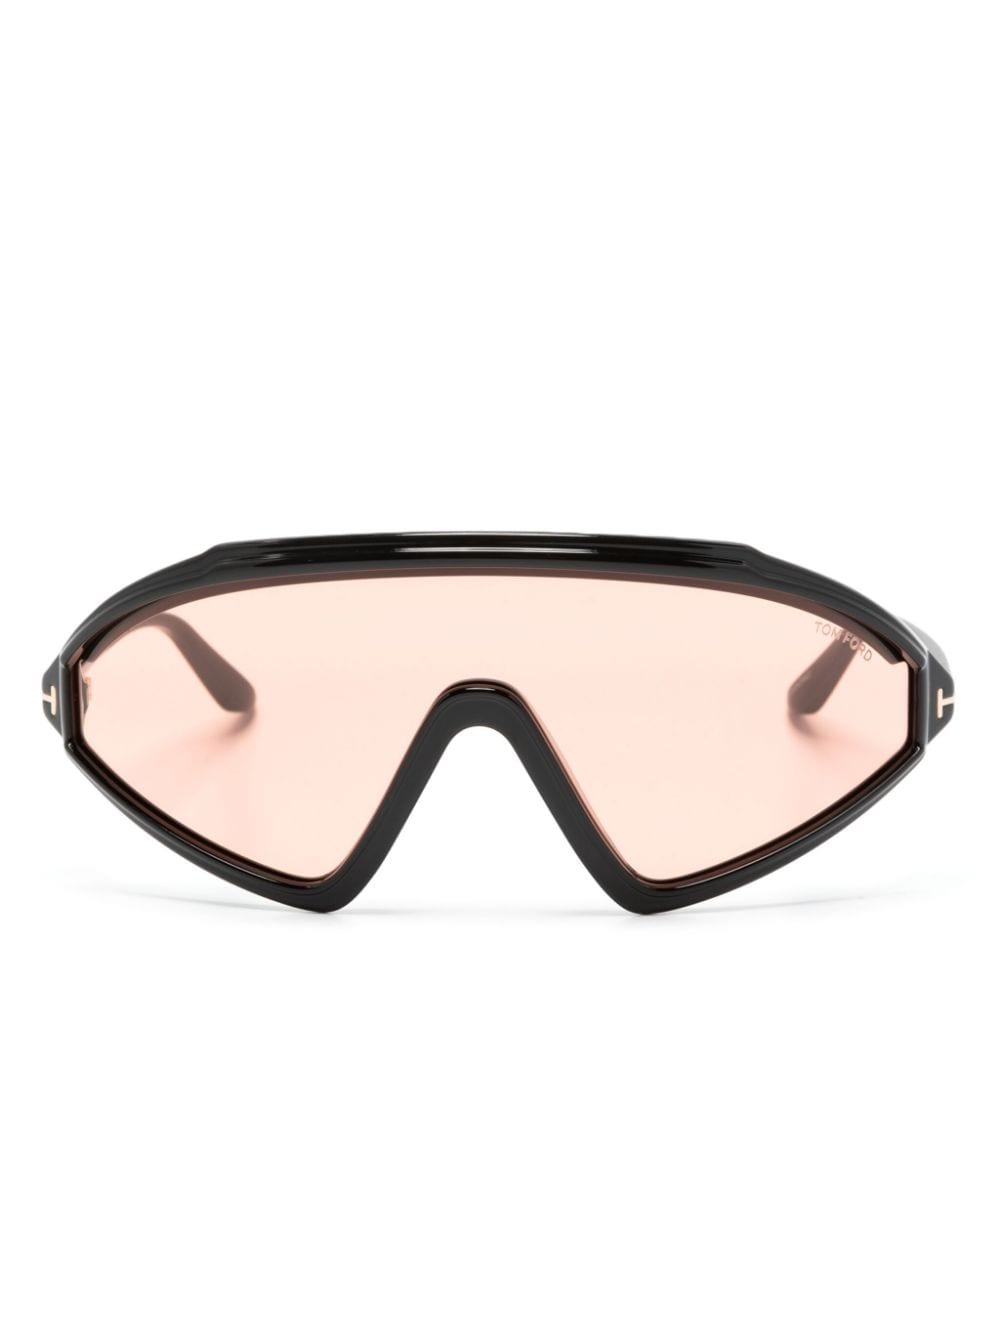 TOM FORD Eyewear Lorna shield-frame sunglasses - Black von TOM FORD Eyewear